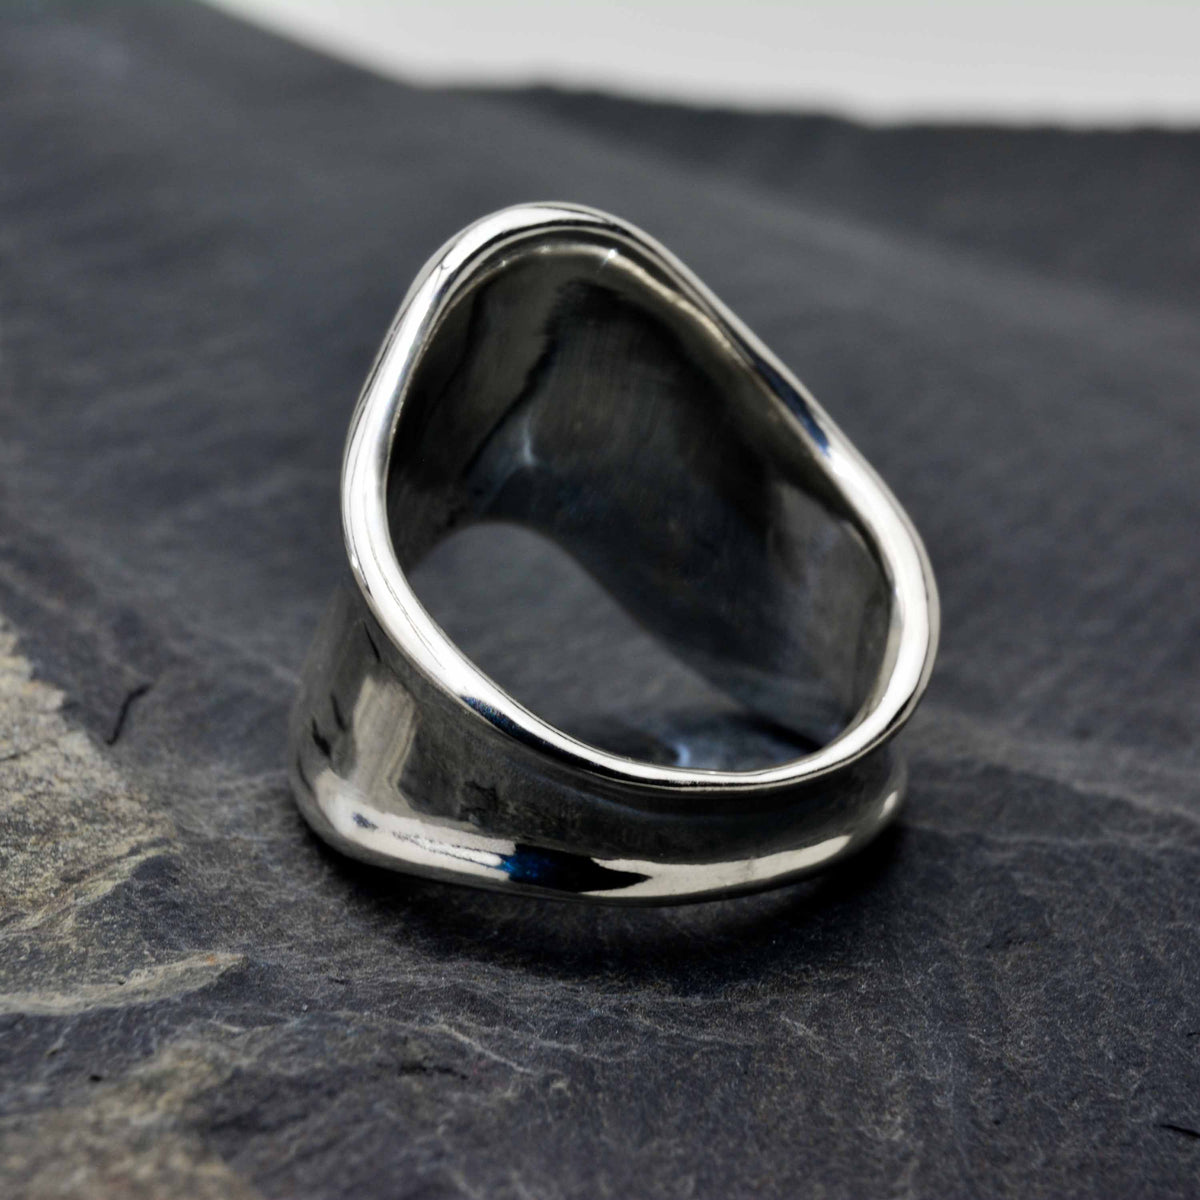 Der Evolution Silver Ring hat ein V-förmiges Design, das kantig, dick und mutig ist